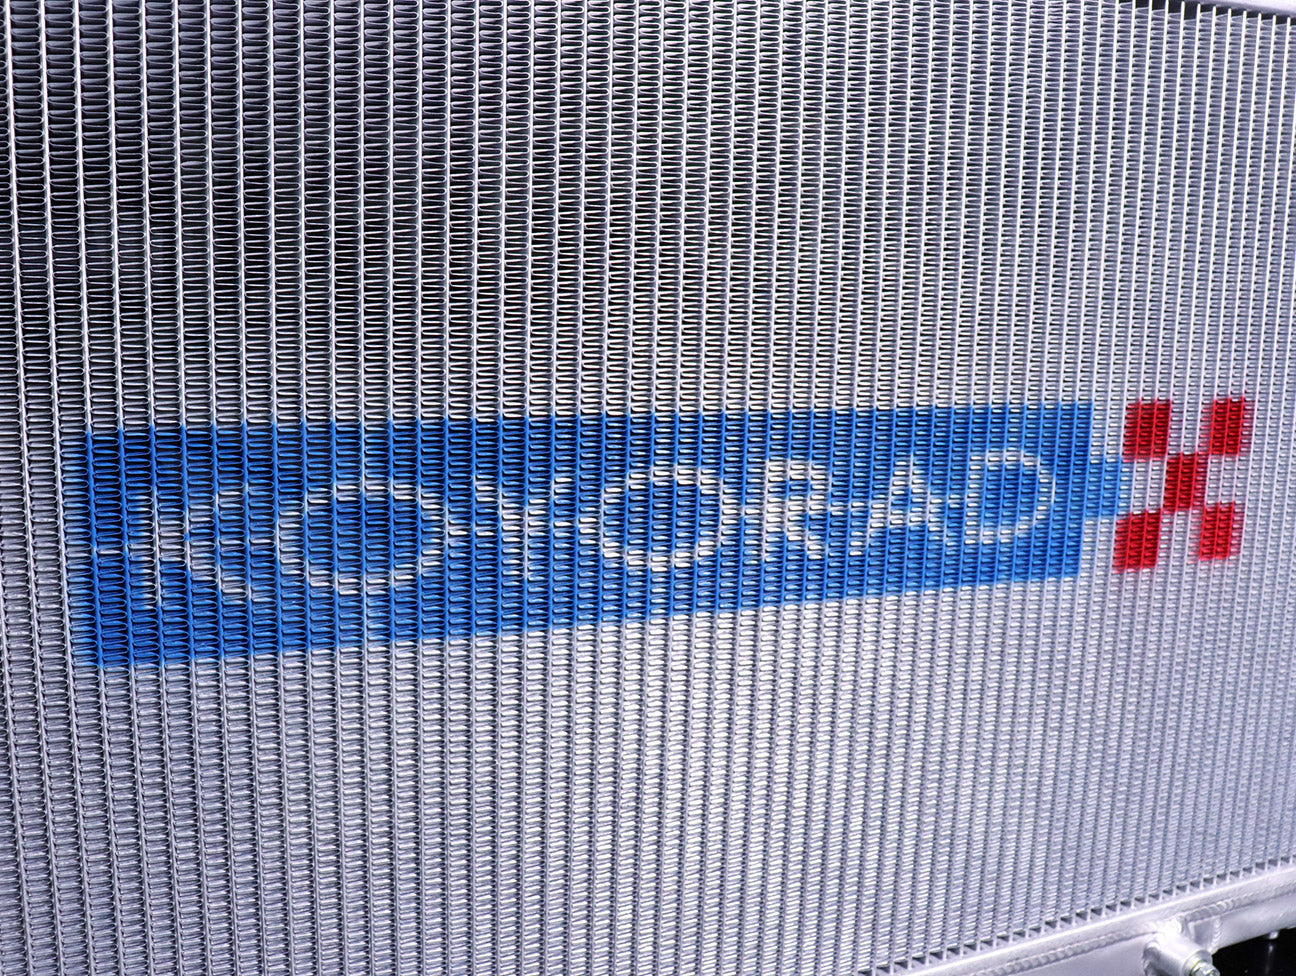 Koyo Aluminum Radiator - 04-08 TSX